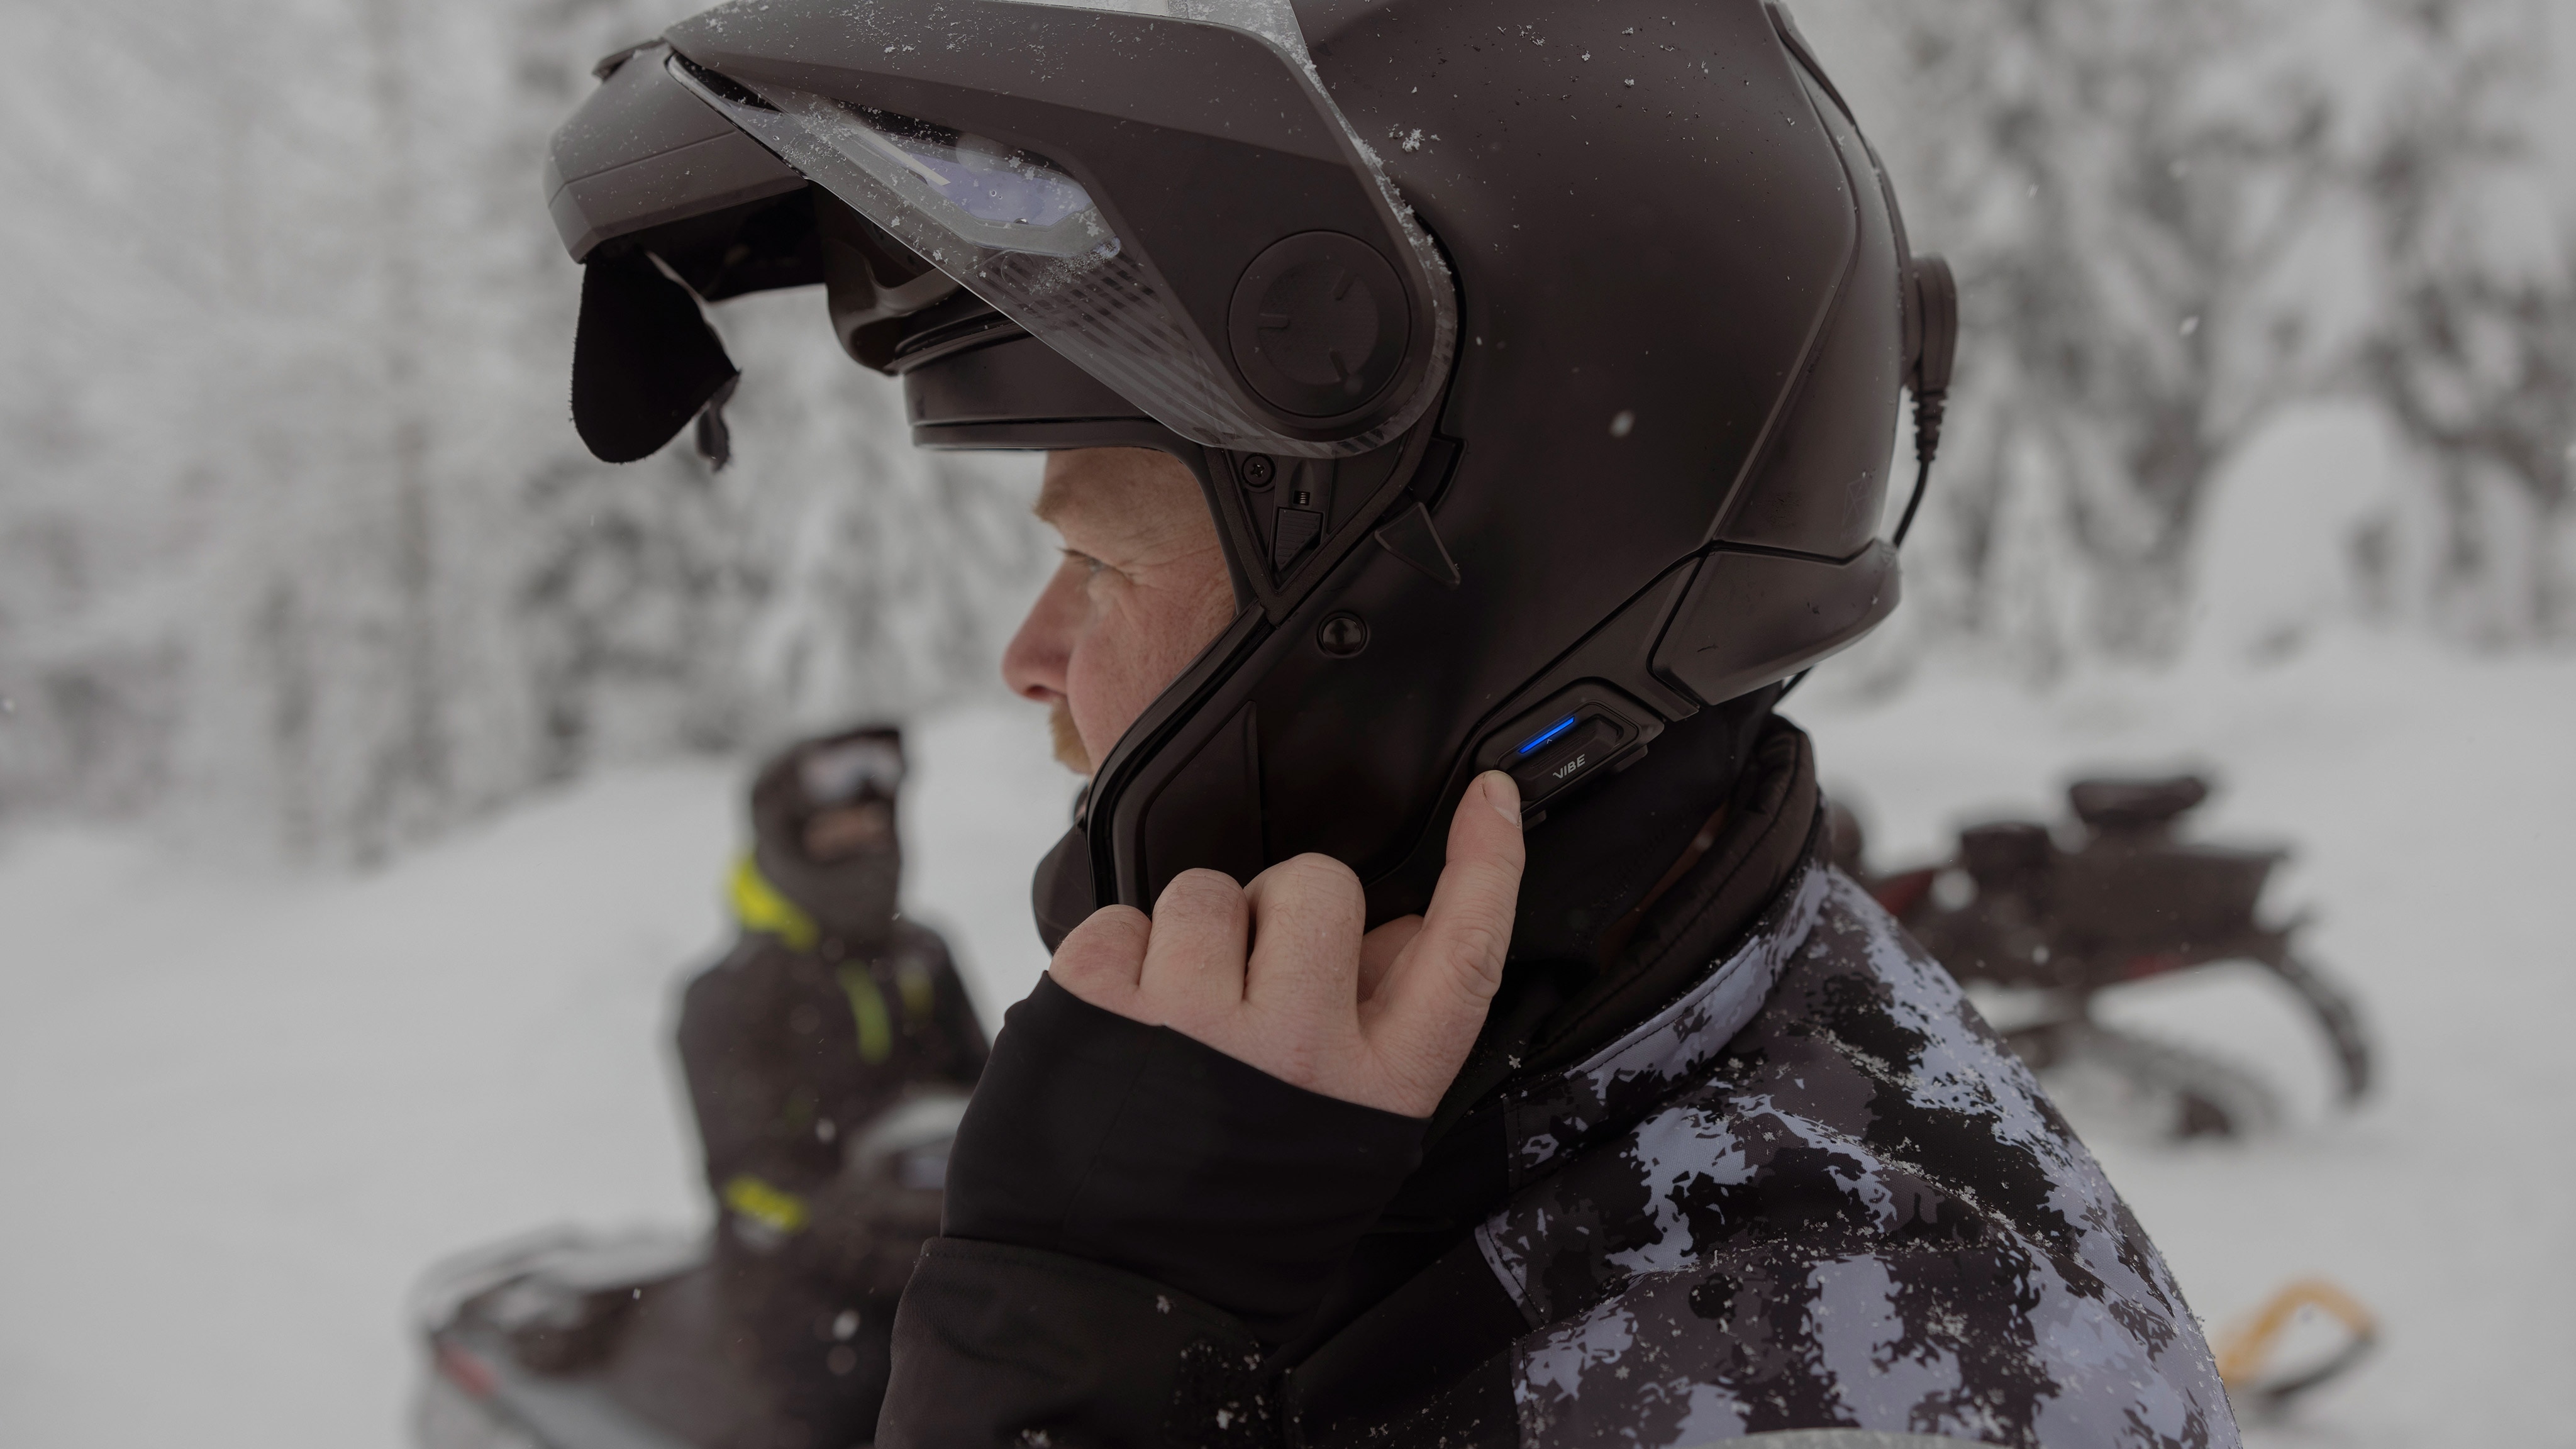 En snöskoterförare använder kommunikationssystemet Vibe på sin hjälm